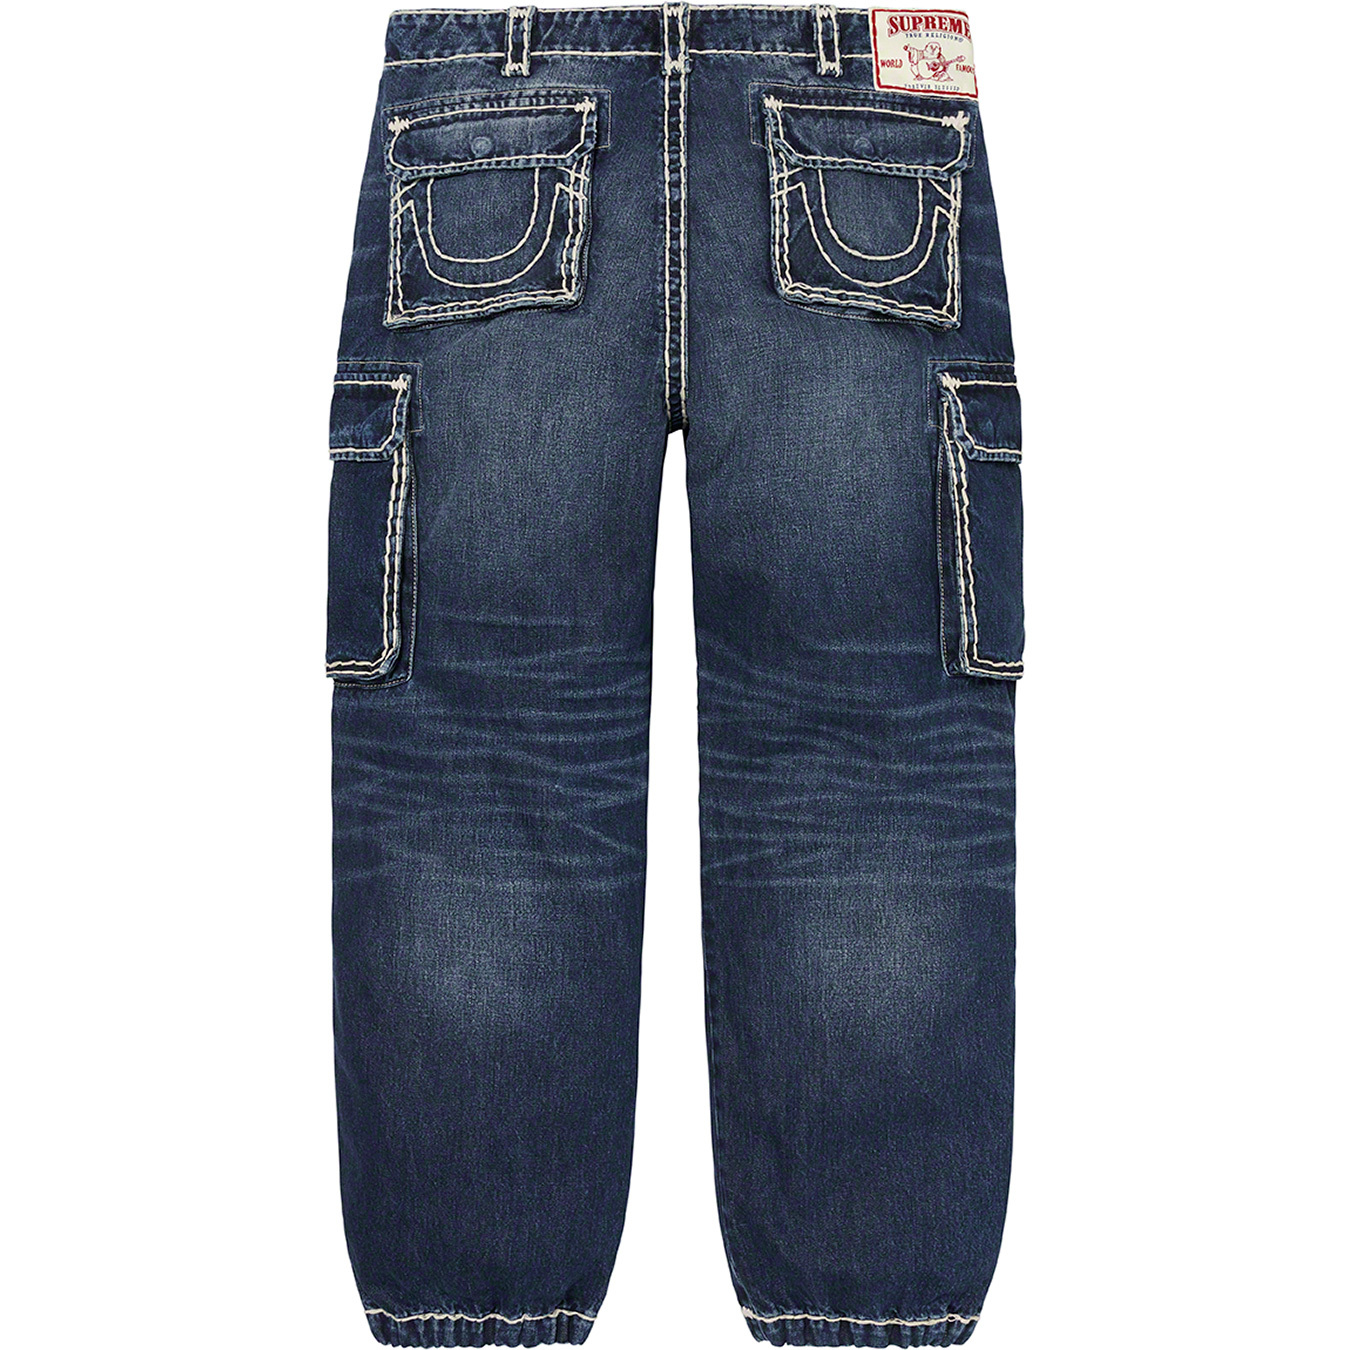 Buy True Religion Dark Blue Premium Quality Jeans Online - Vogue Mine